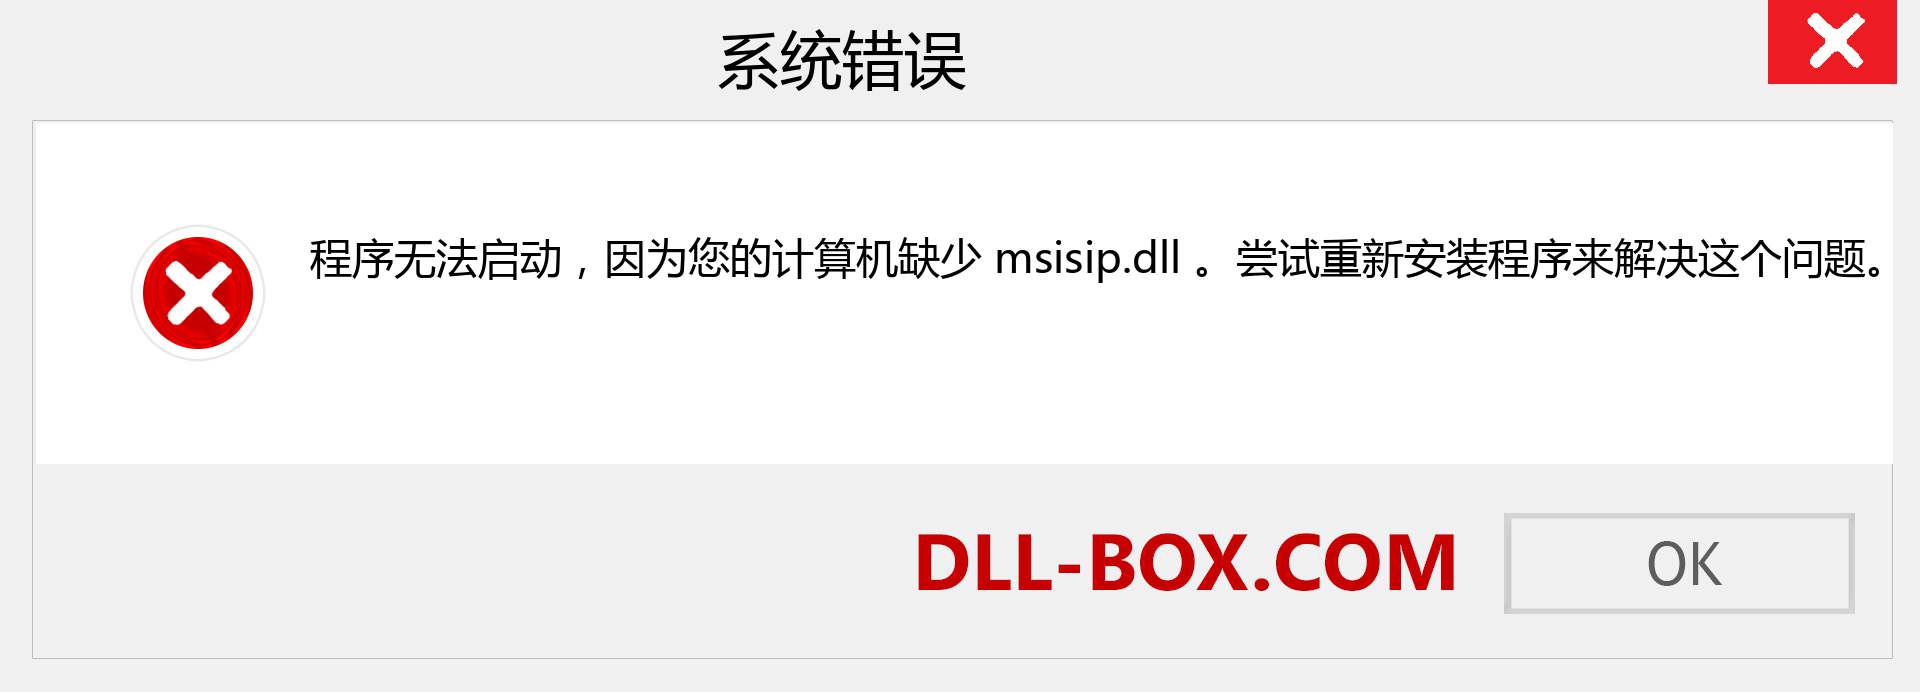 msisip.dll 文件丢失？。 适用于 Windows 7、8、10 的下载 - 修复 Windows、照片、图像上的 msisip dll 丢失错误